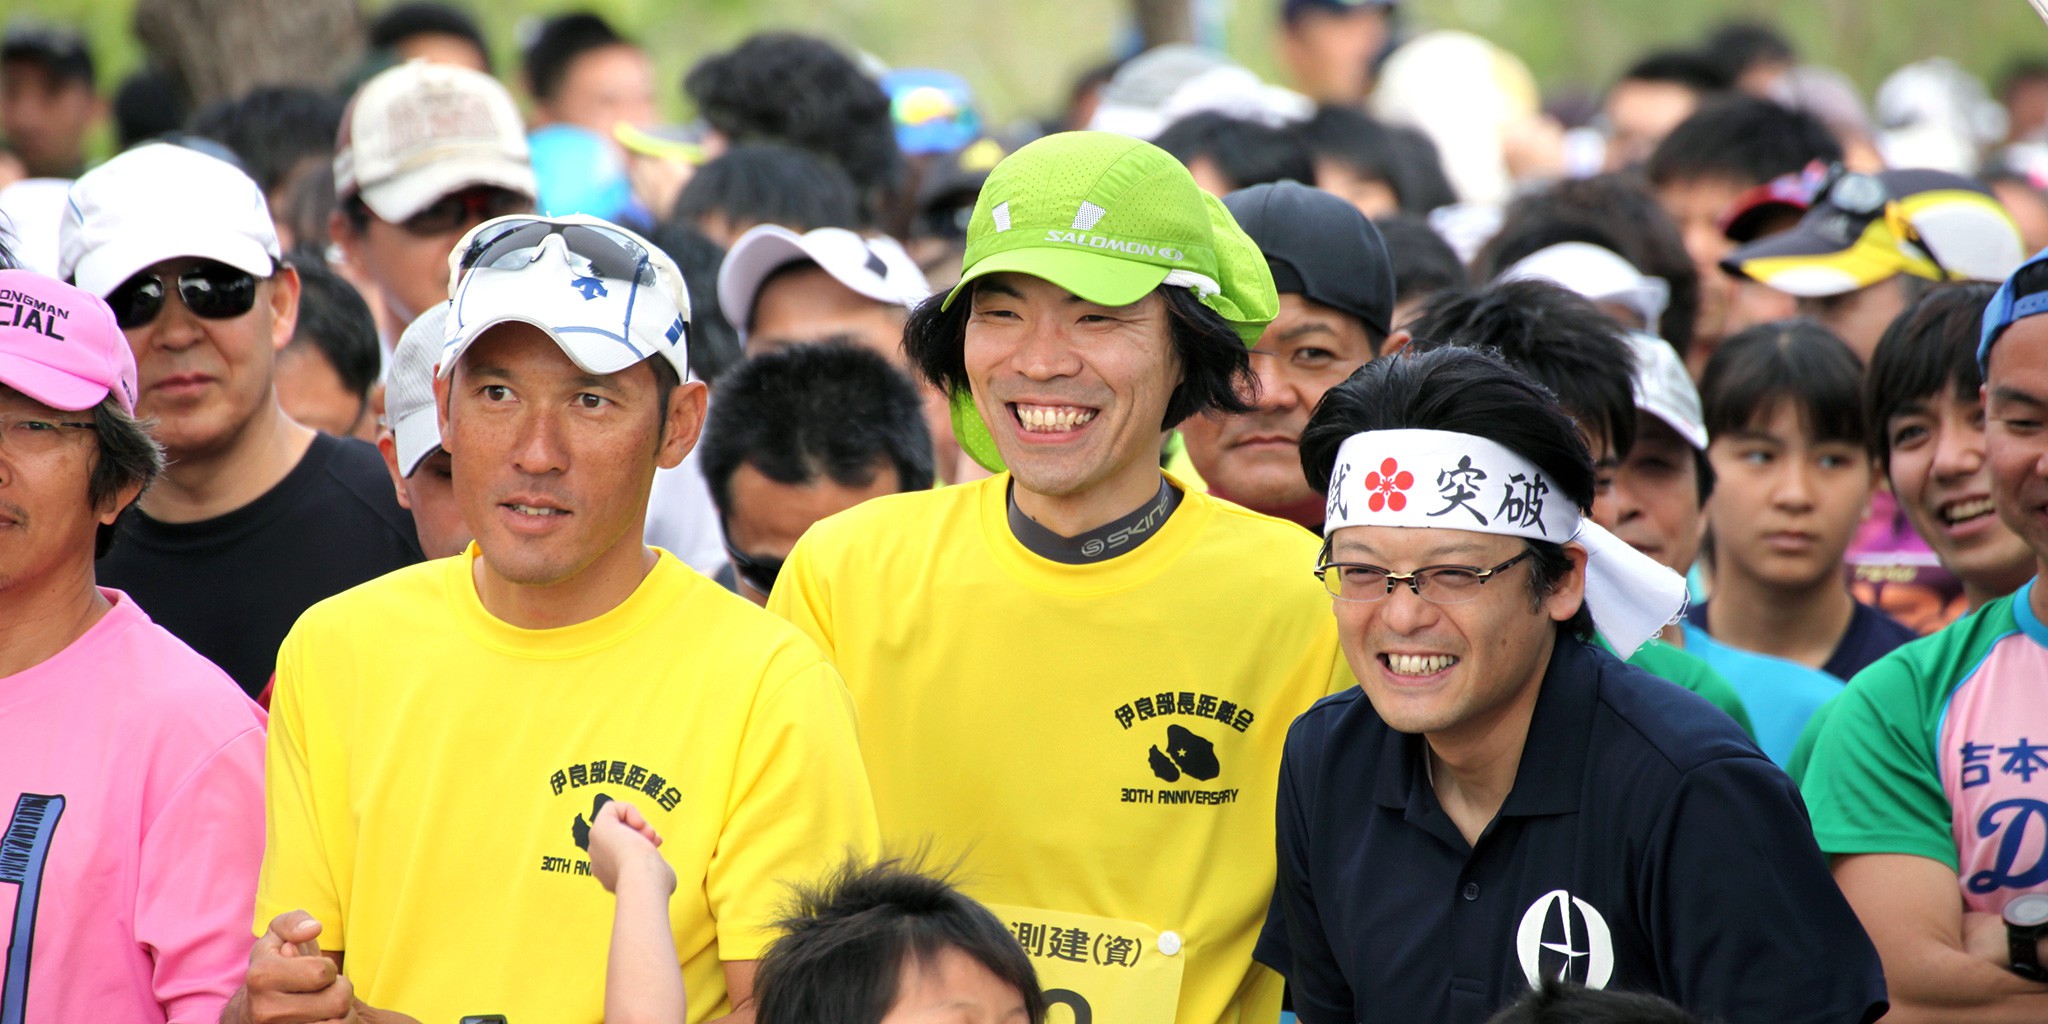 伊良部マラソンのコースは大自然を楽しみながら走る 沖縄 宮古島style